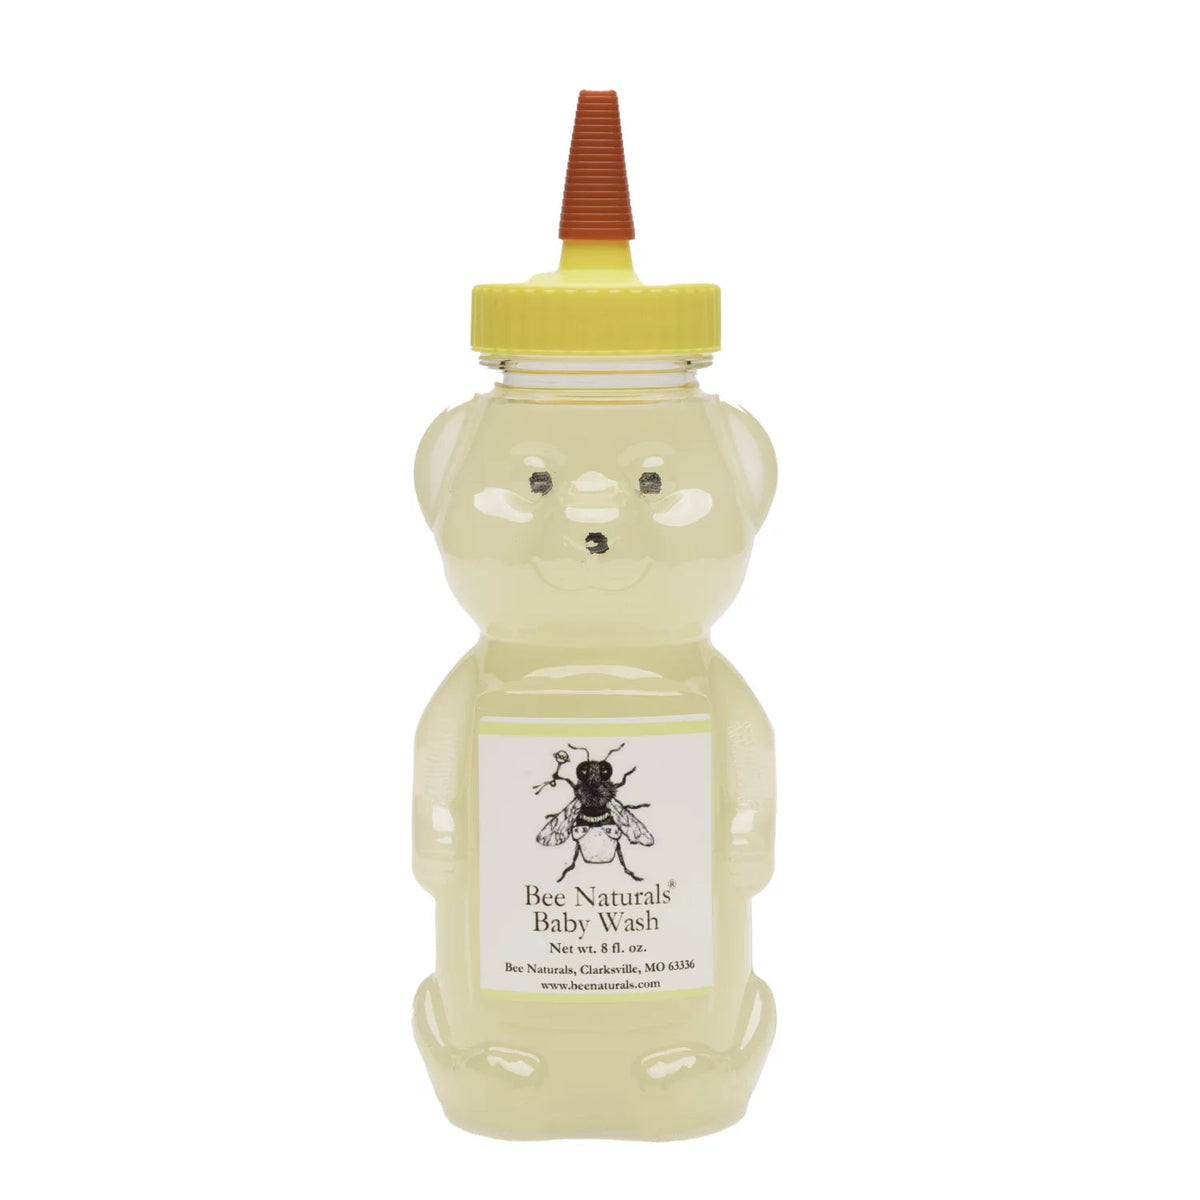 Baby Wash gentle - Bee Naturals Store